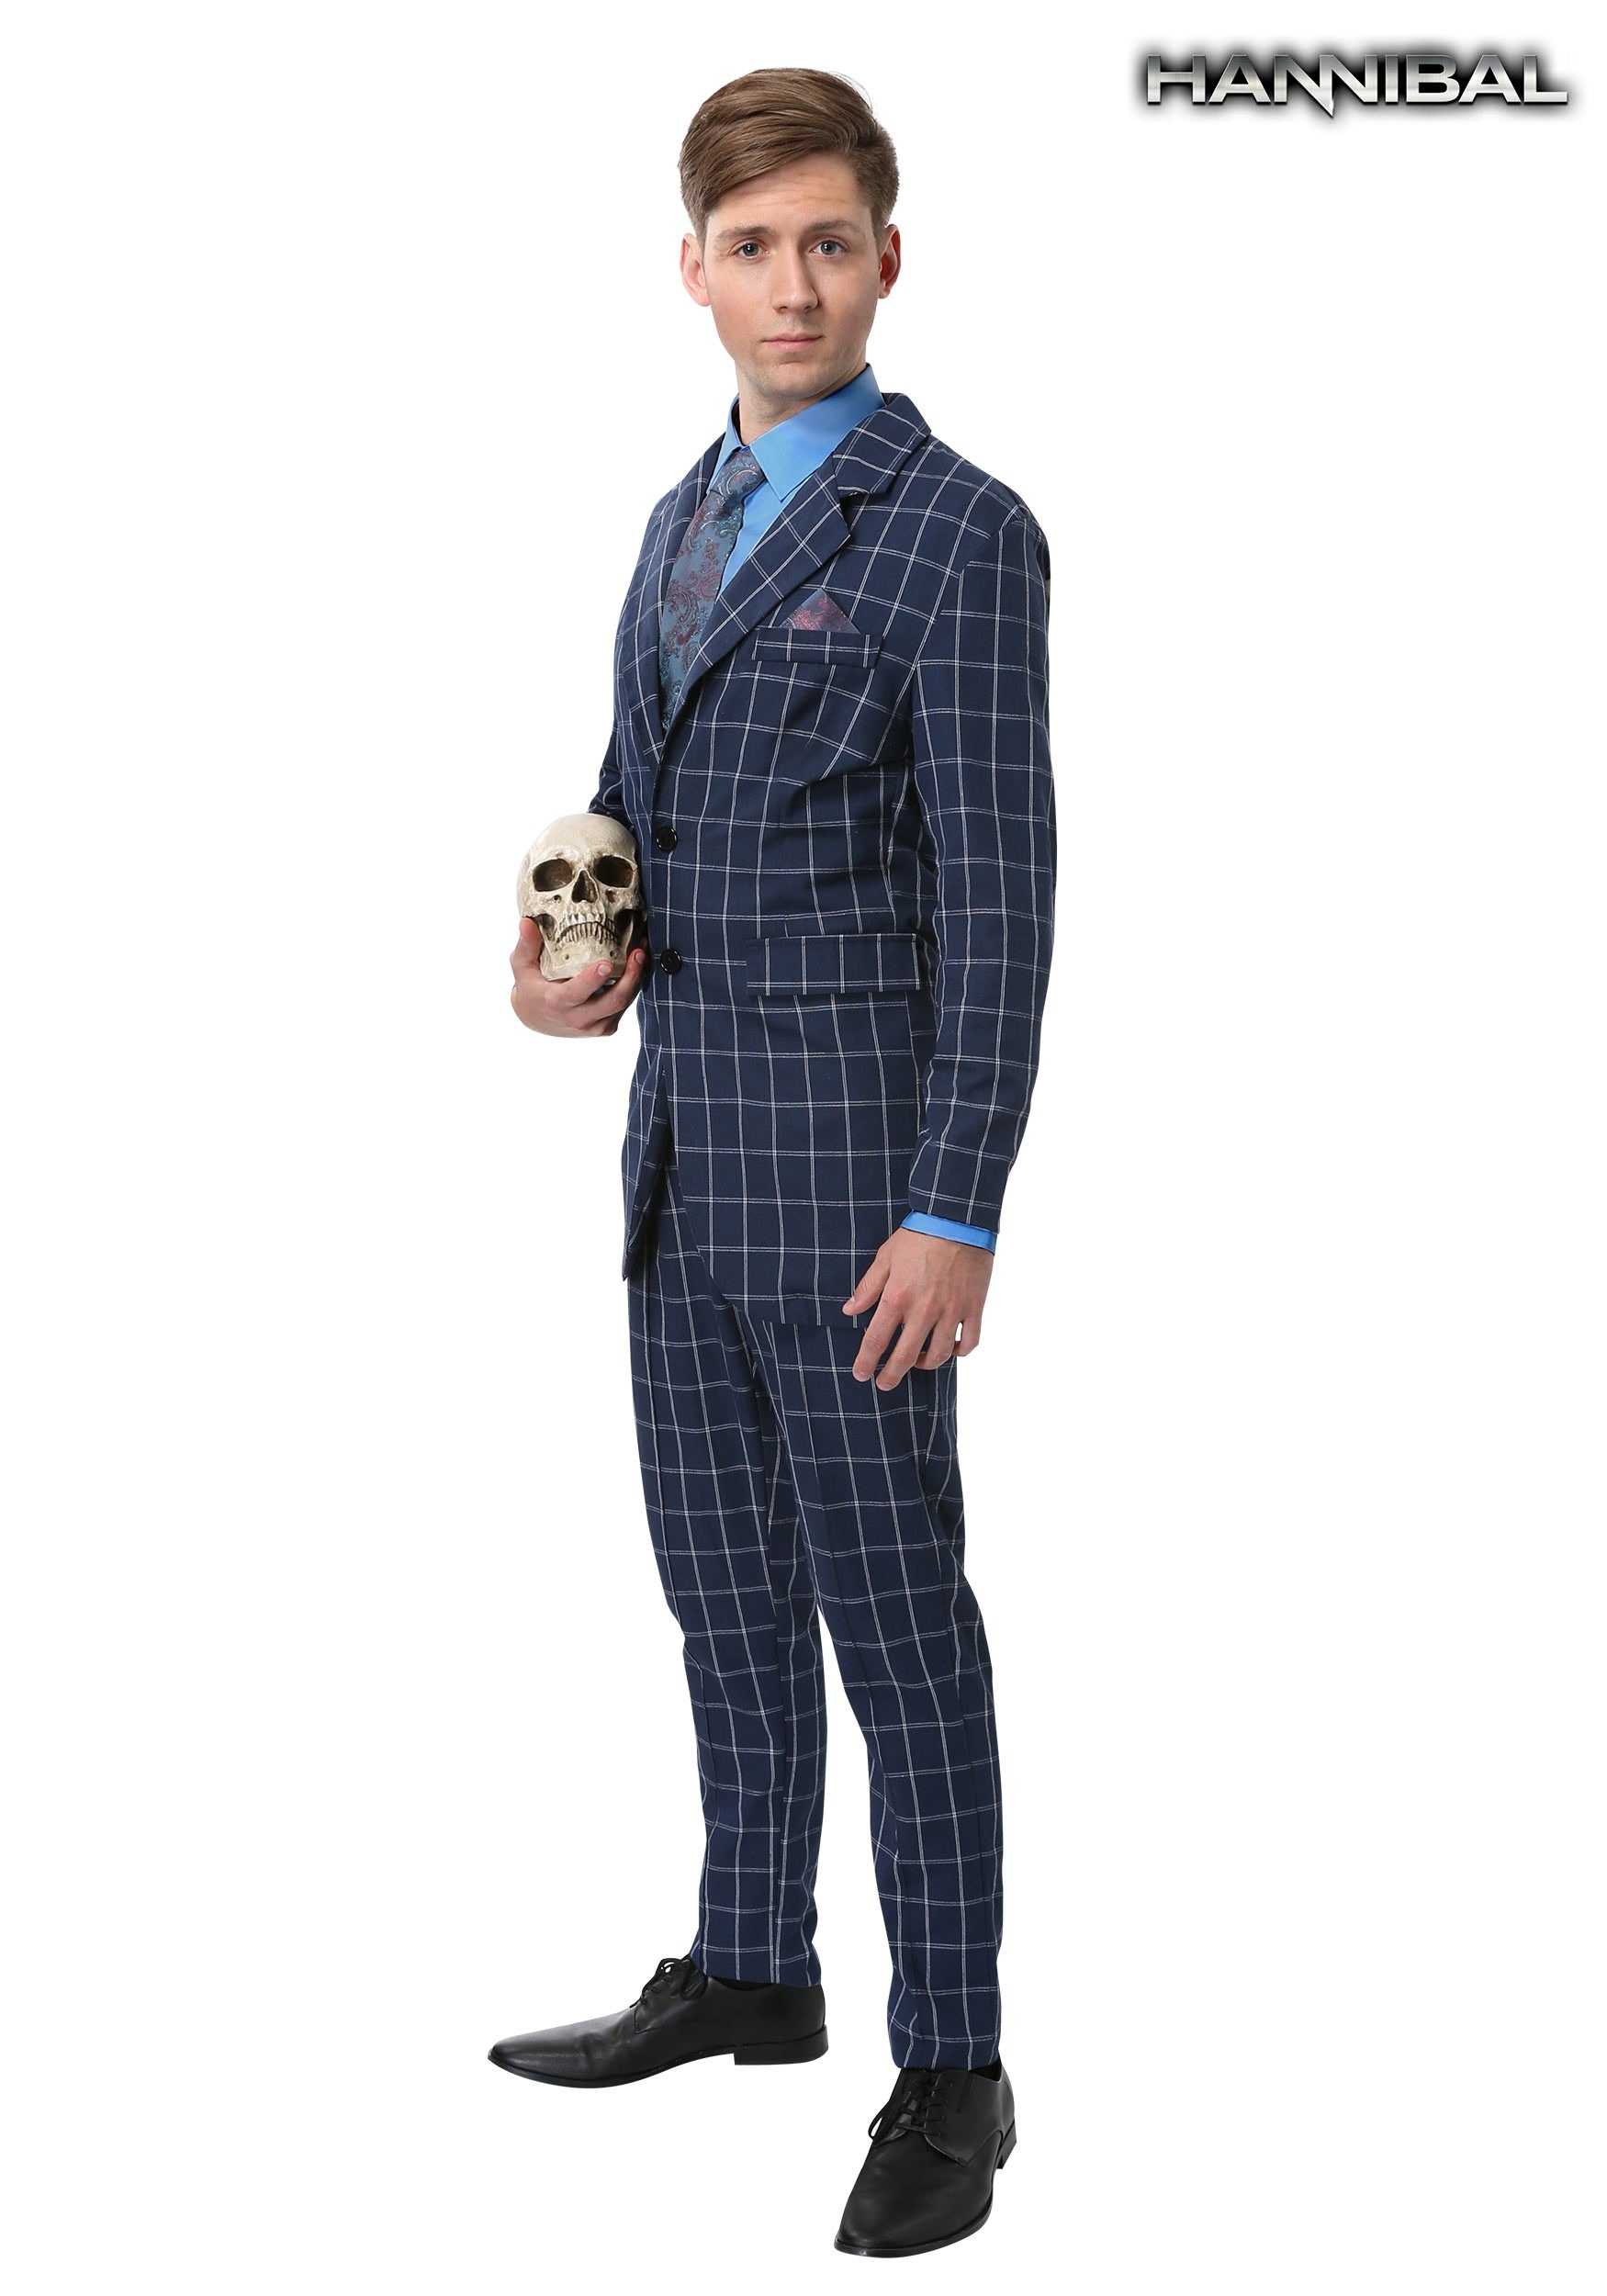 Hannibal Lecter Fancy dress costume Suit Large 